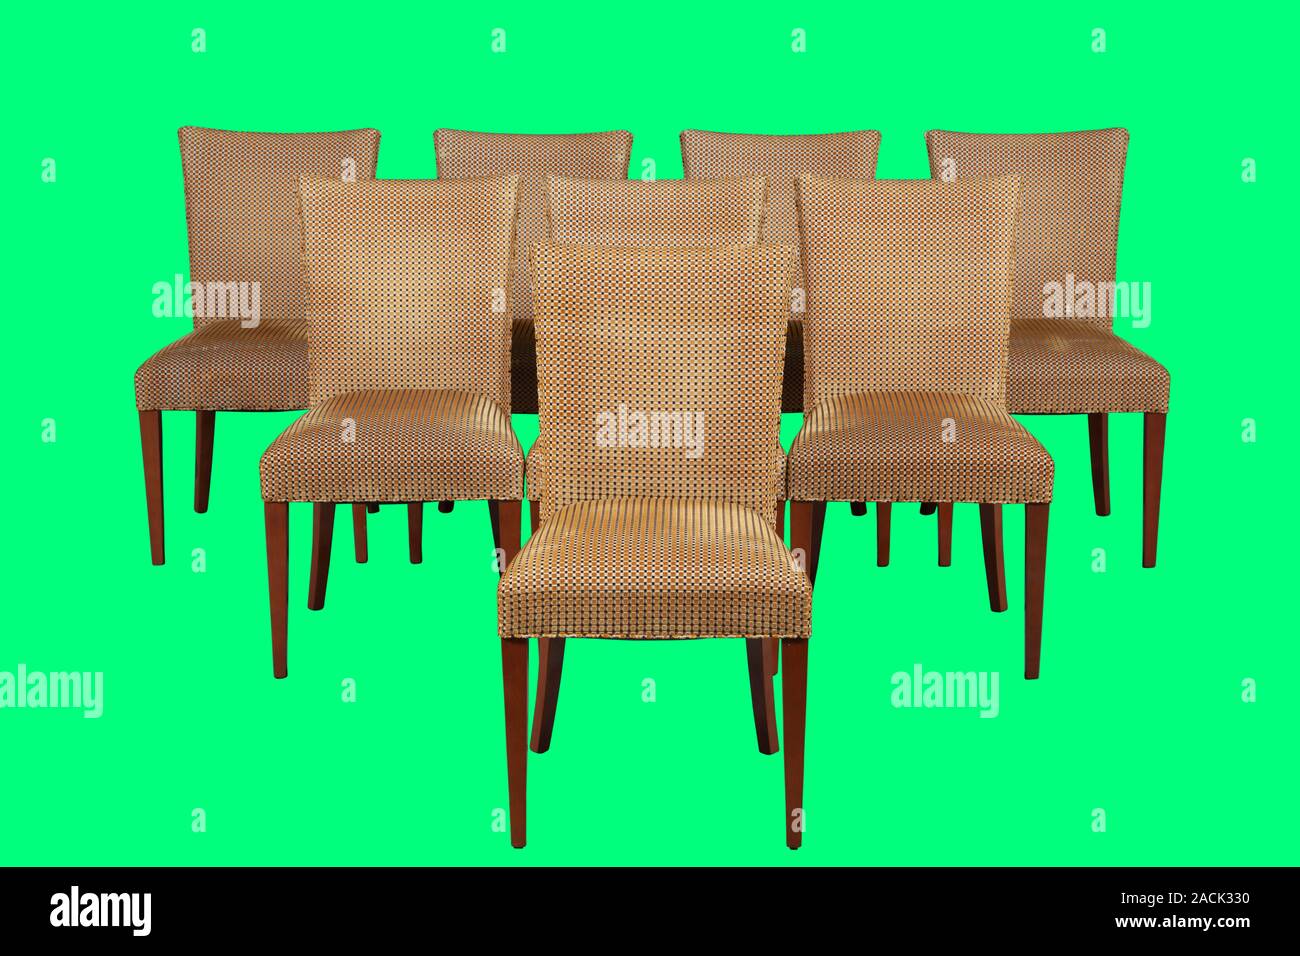 Jeu de chaise pour l'intérieur isolé sur fond vert avec clipping path Banque D'Images